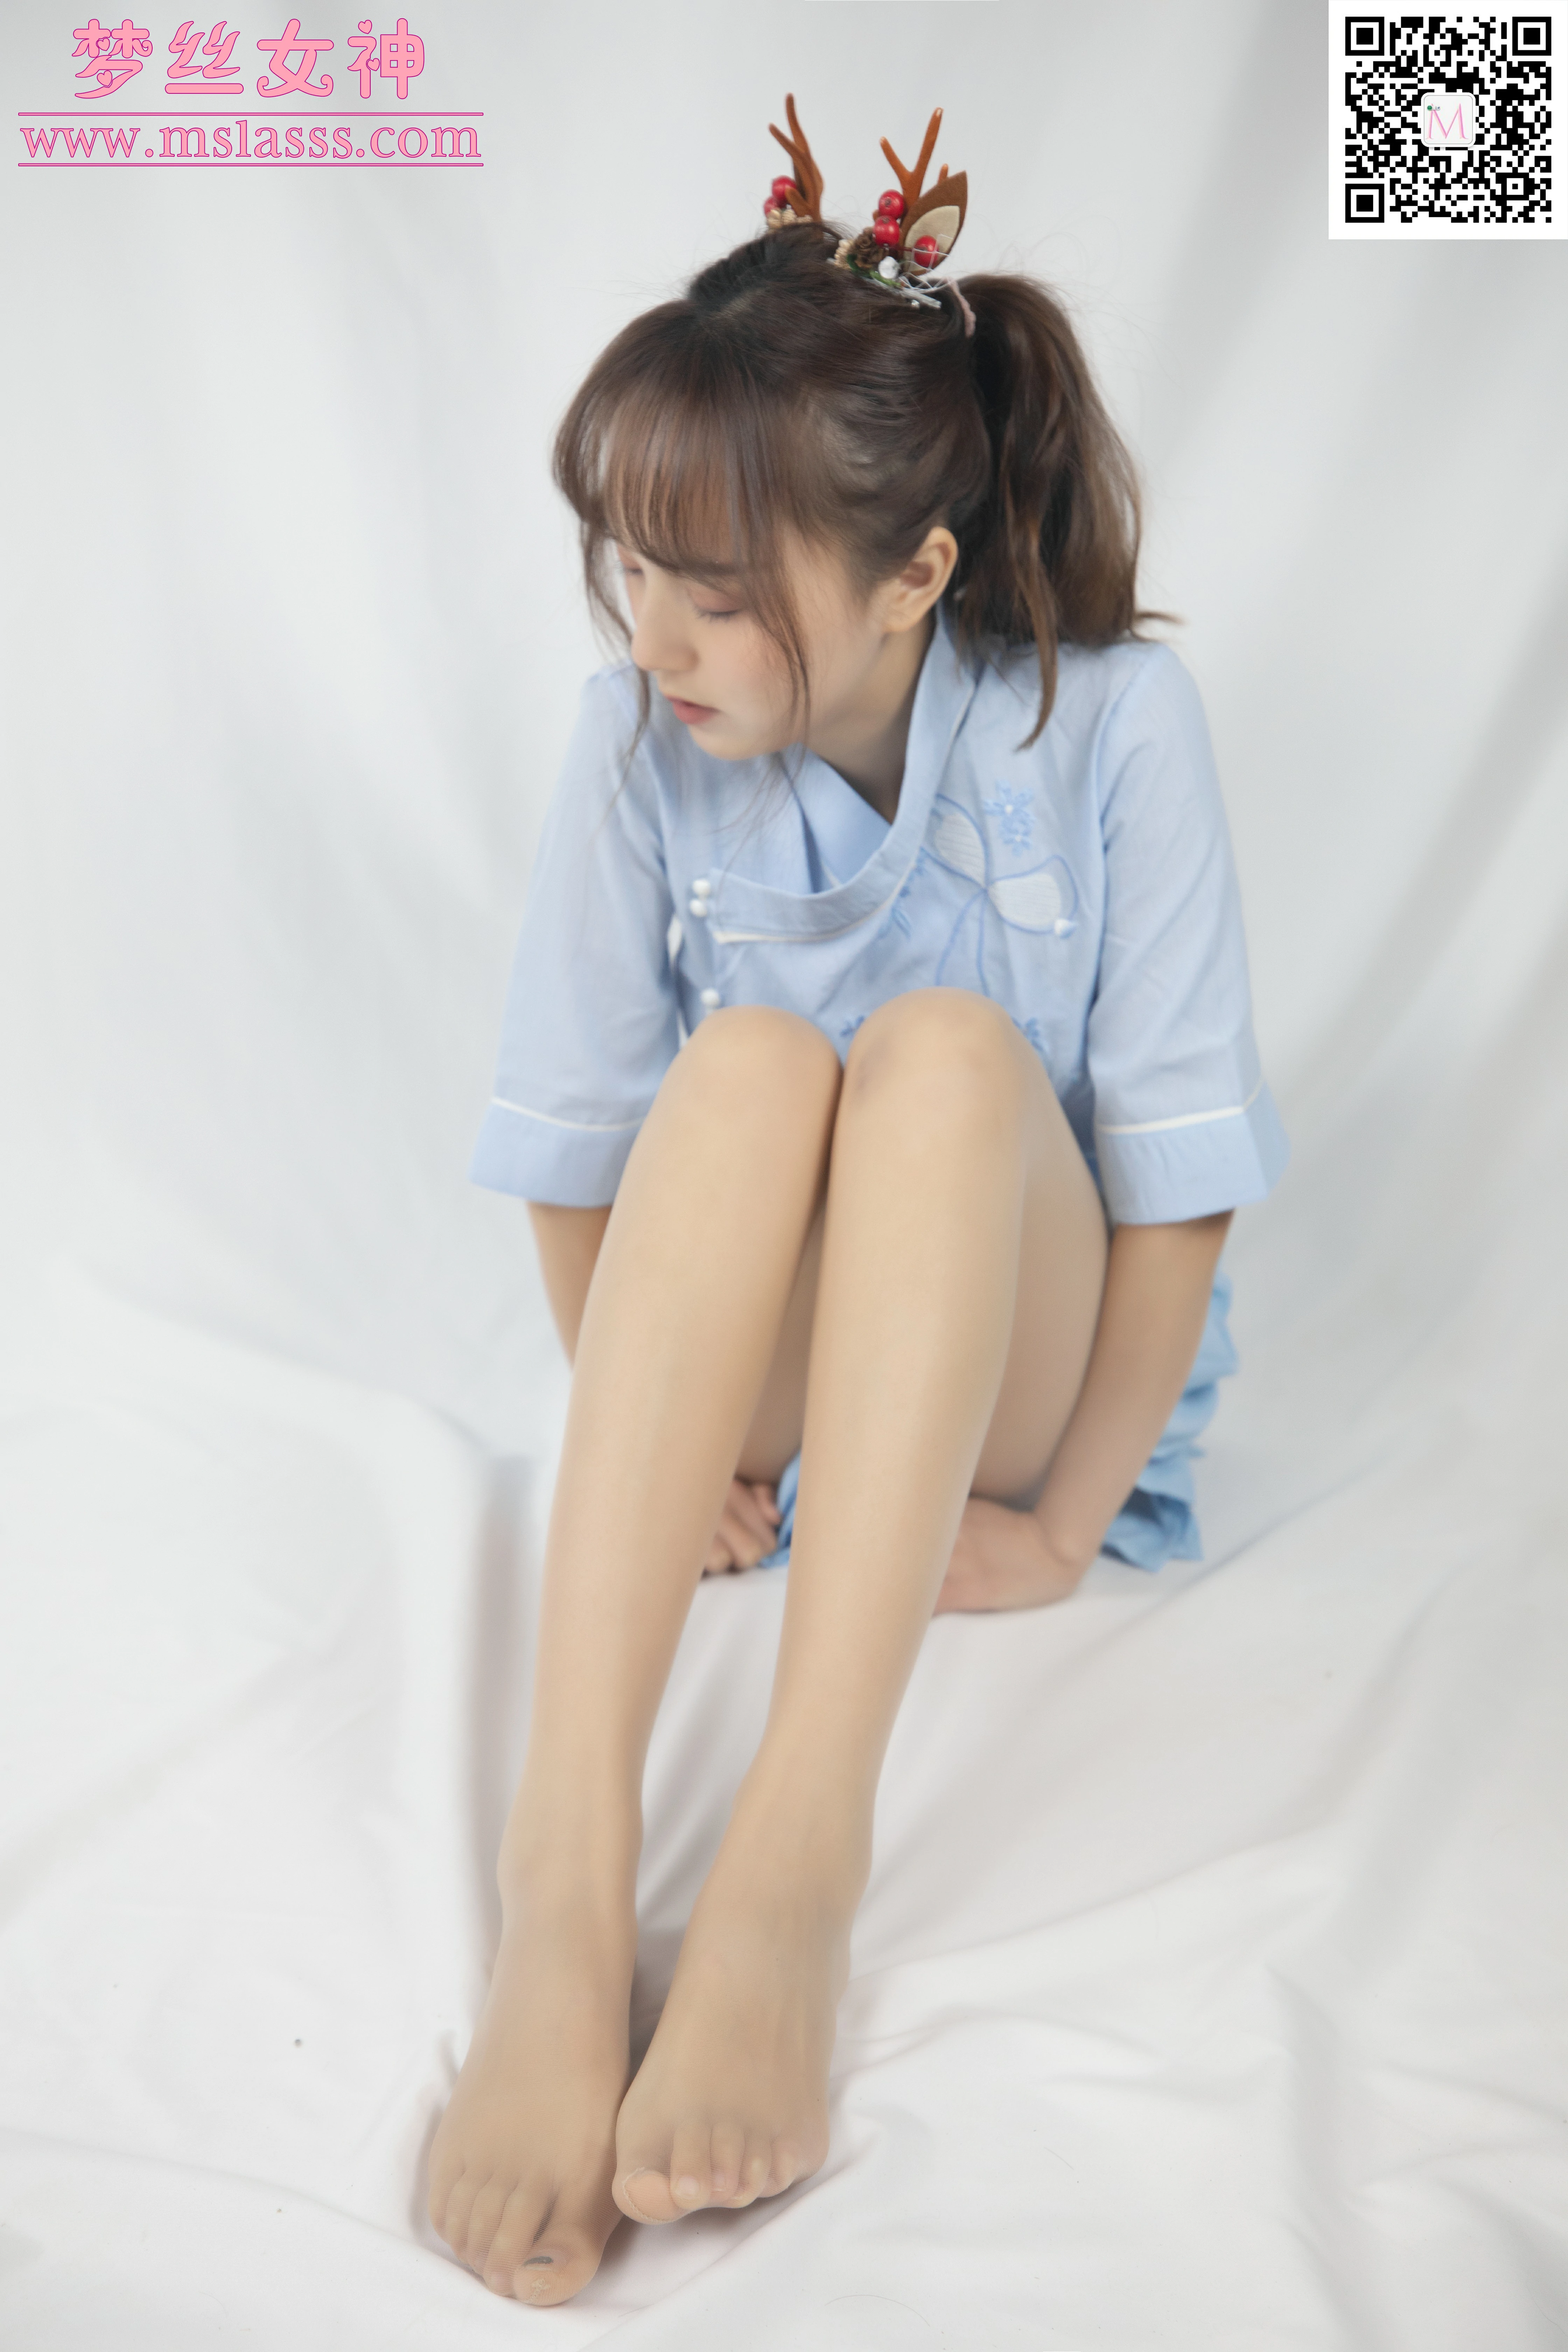 [MSLASS梦丝女神]NO.081 蓝色古装仙女颜值 玥玥 蓝色短袖与短裙加肉色丝袜美腿性感私房写真集,